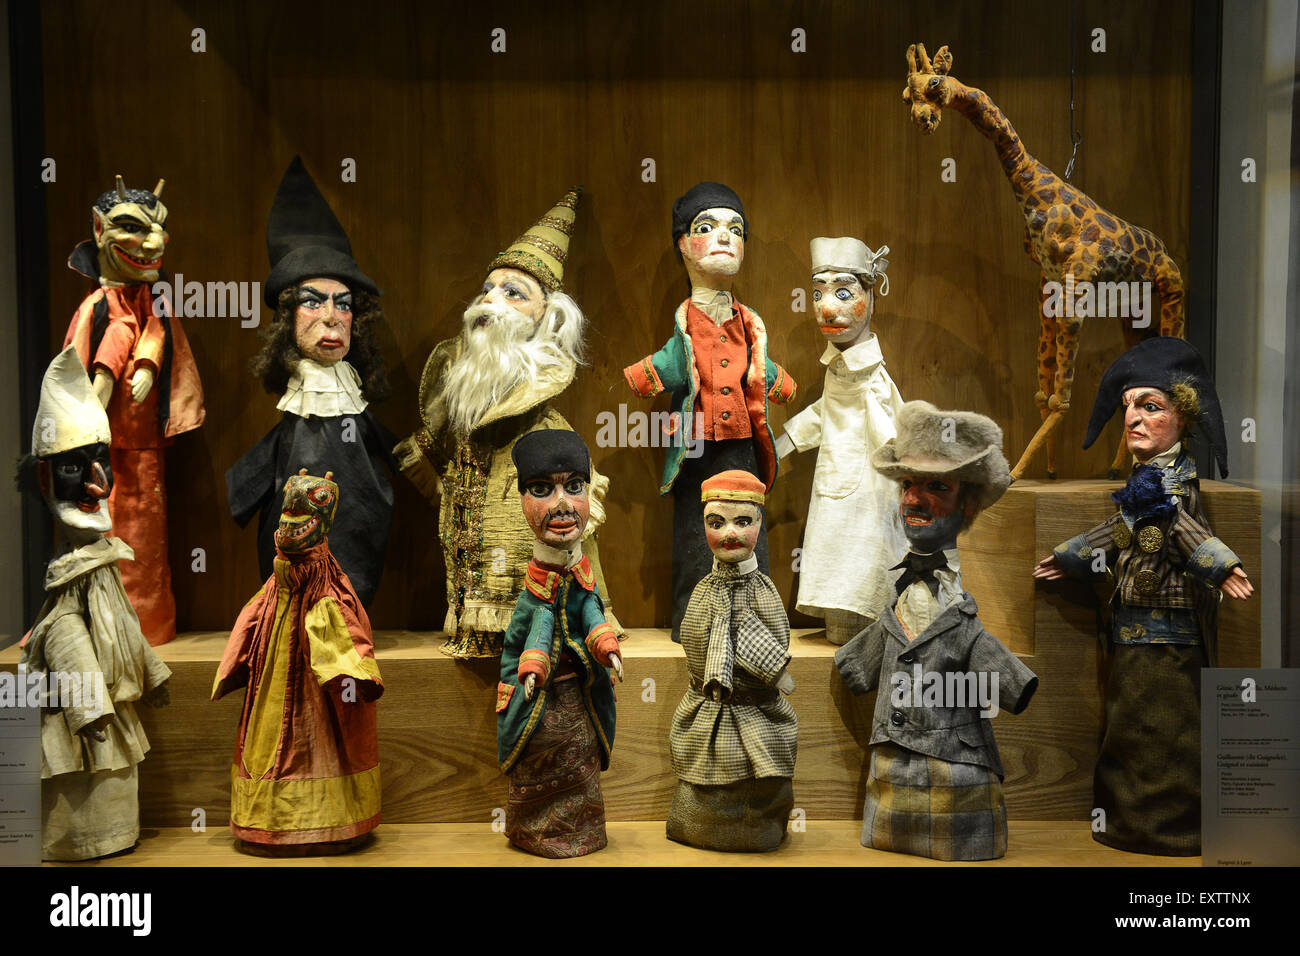 Marionnette : 201 287 images, photos de stock, objets 3D et images